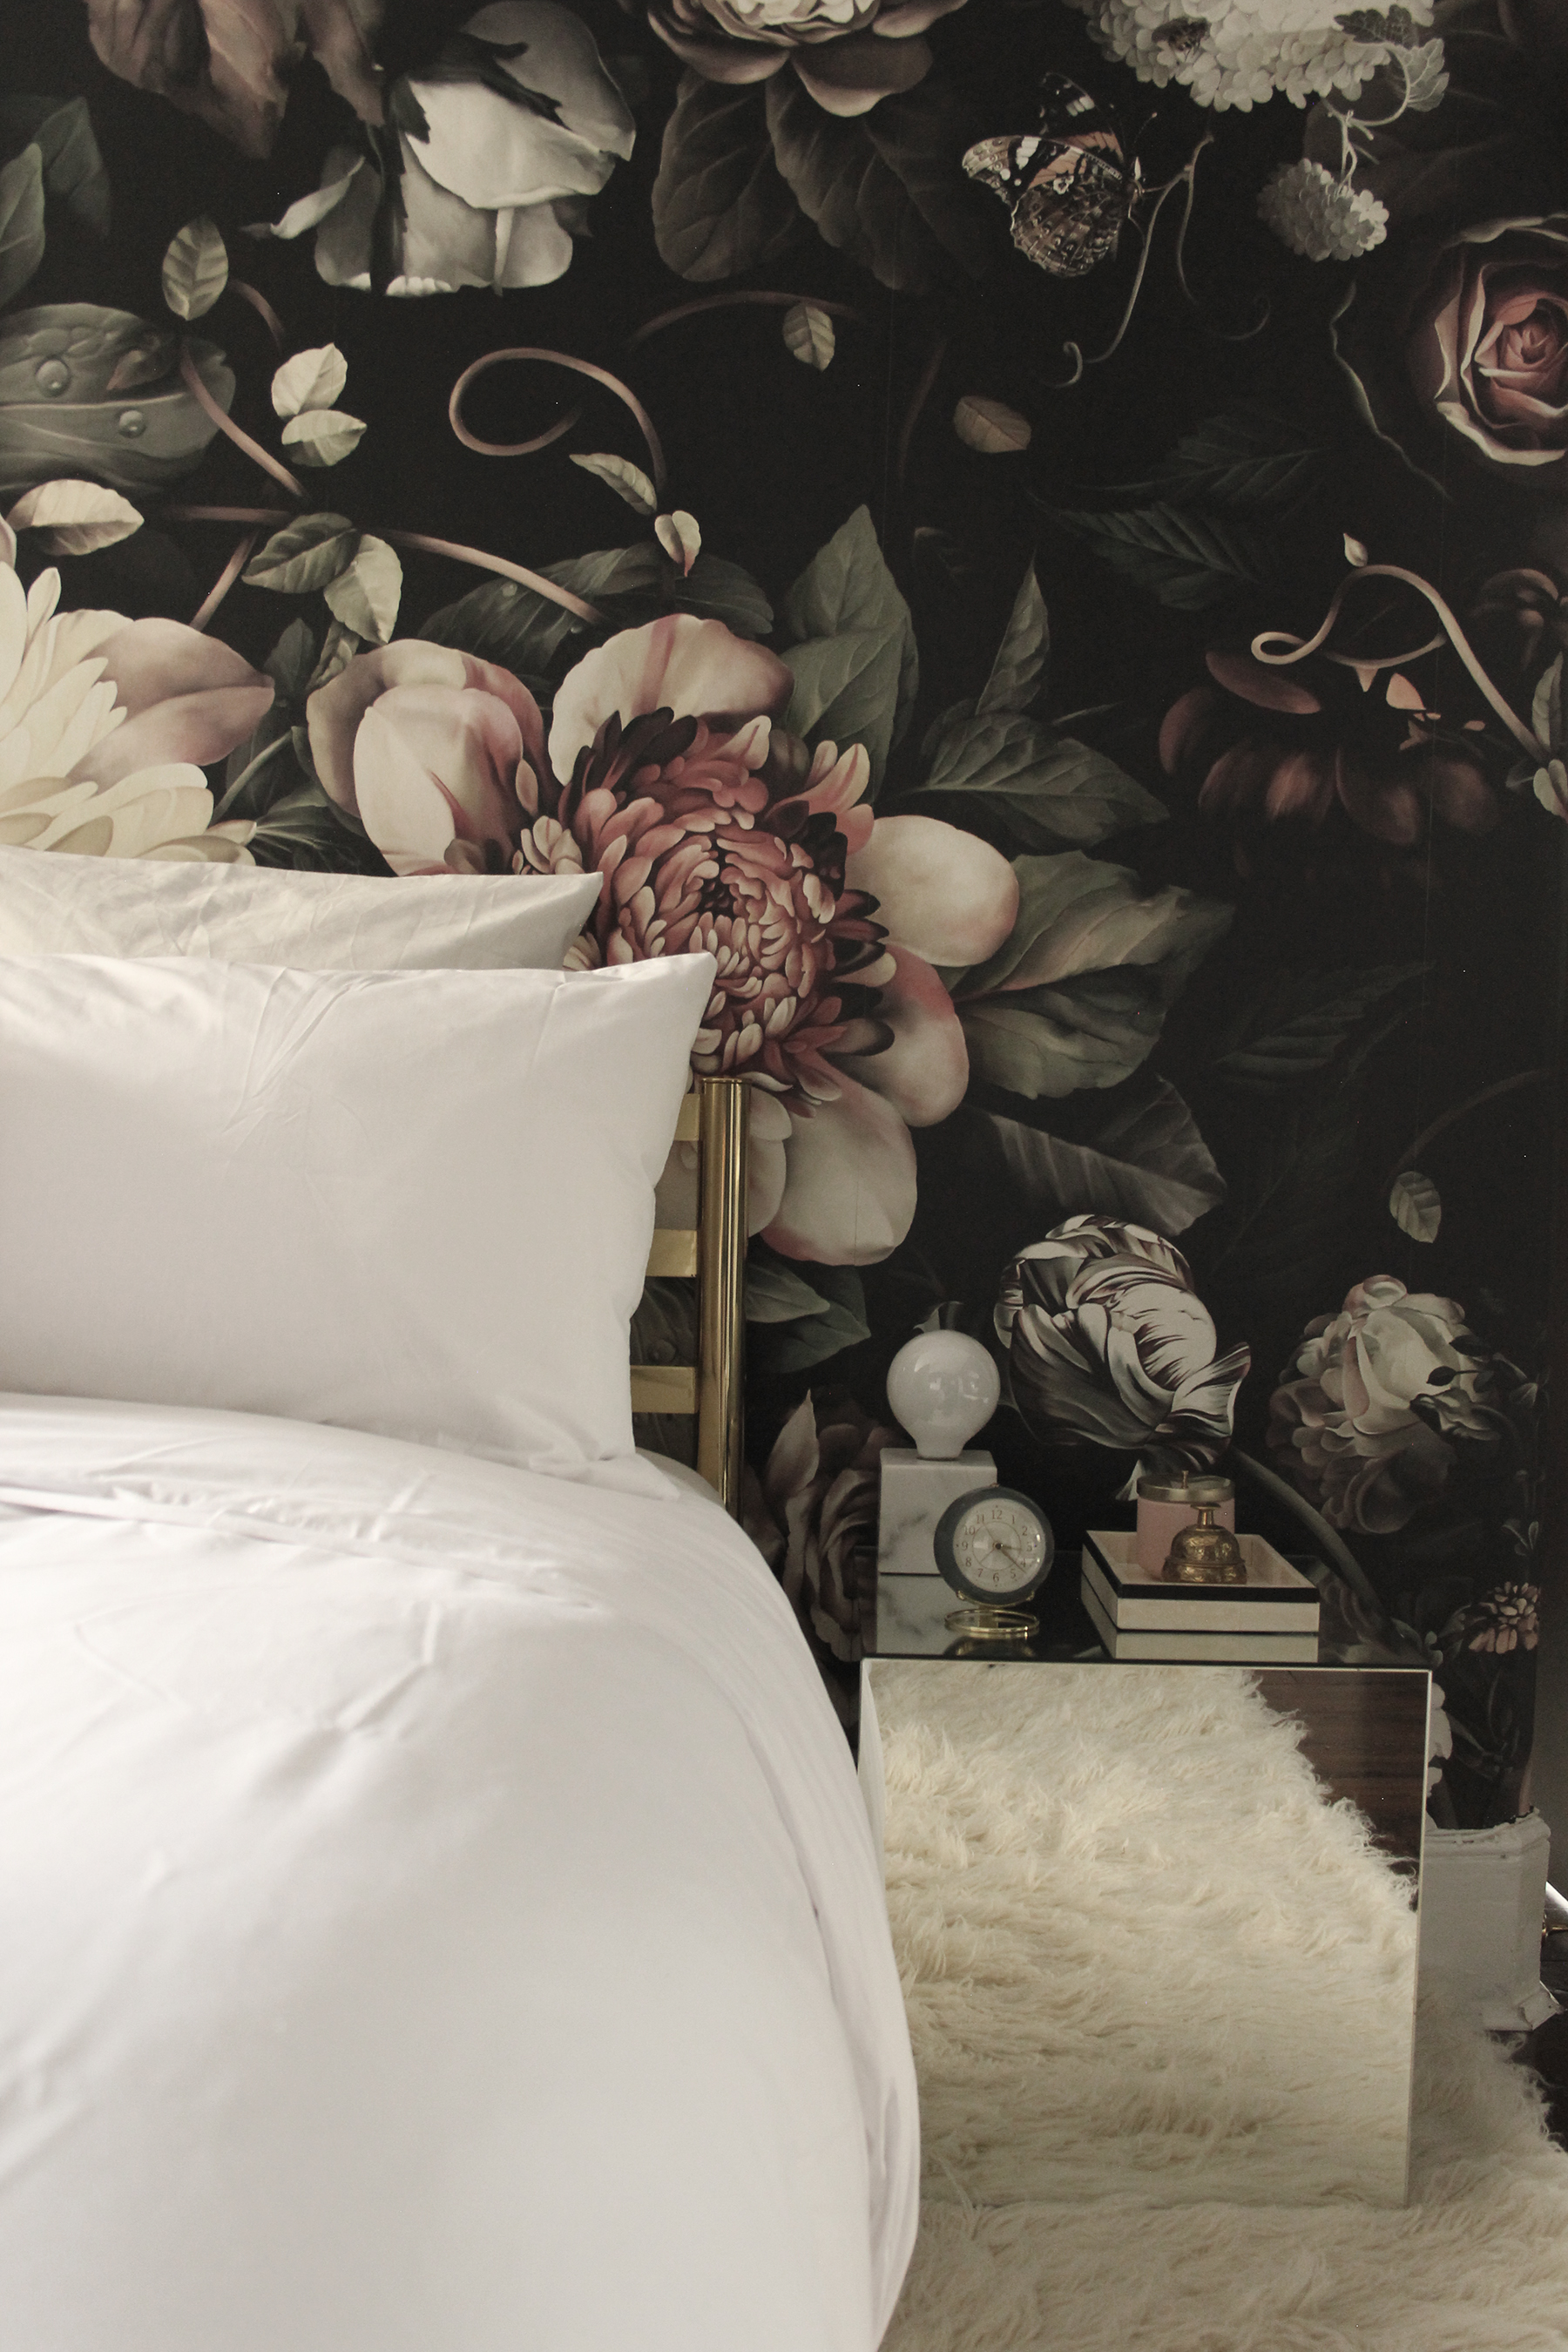 dark bedroom wallpaper,bedroom,room,petal,furniture,bed